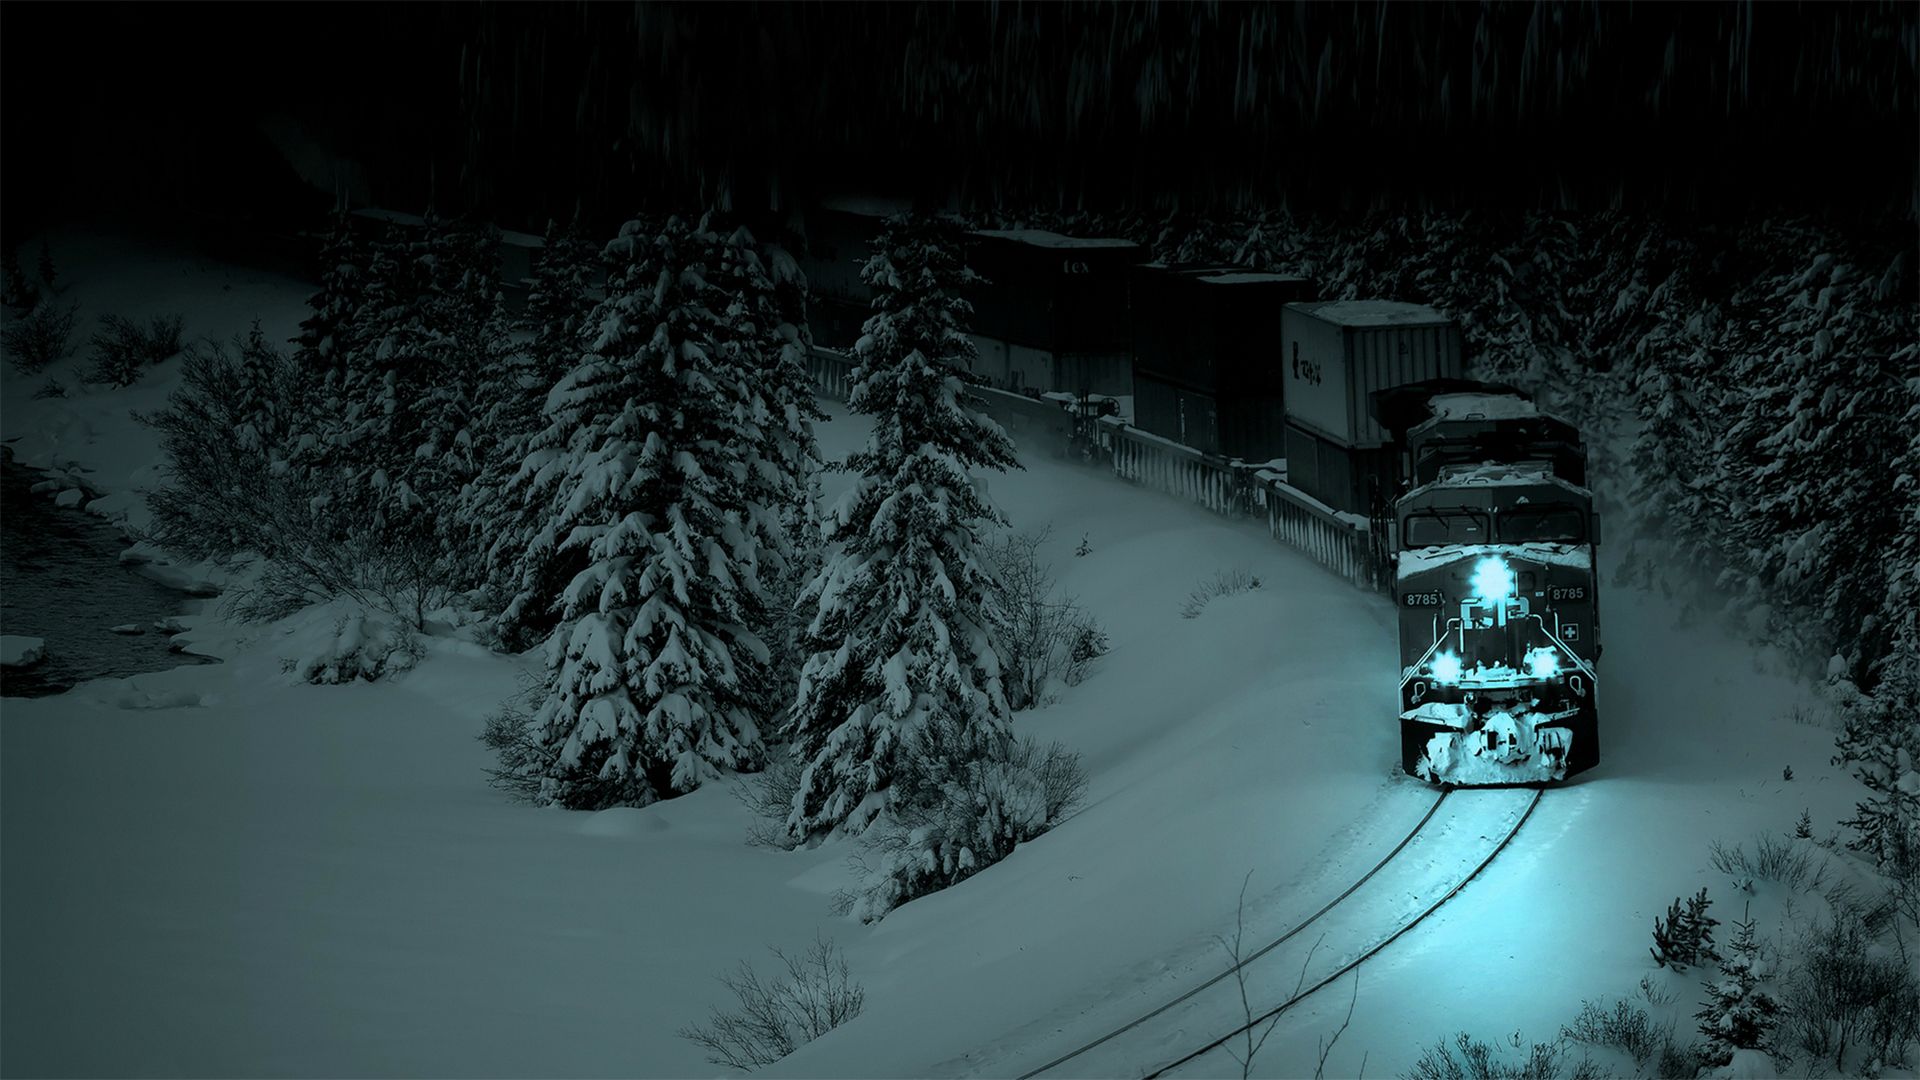 Beautiful winter photo: train at night